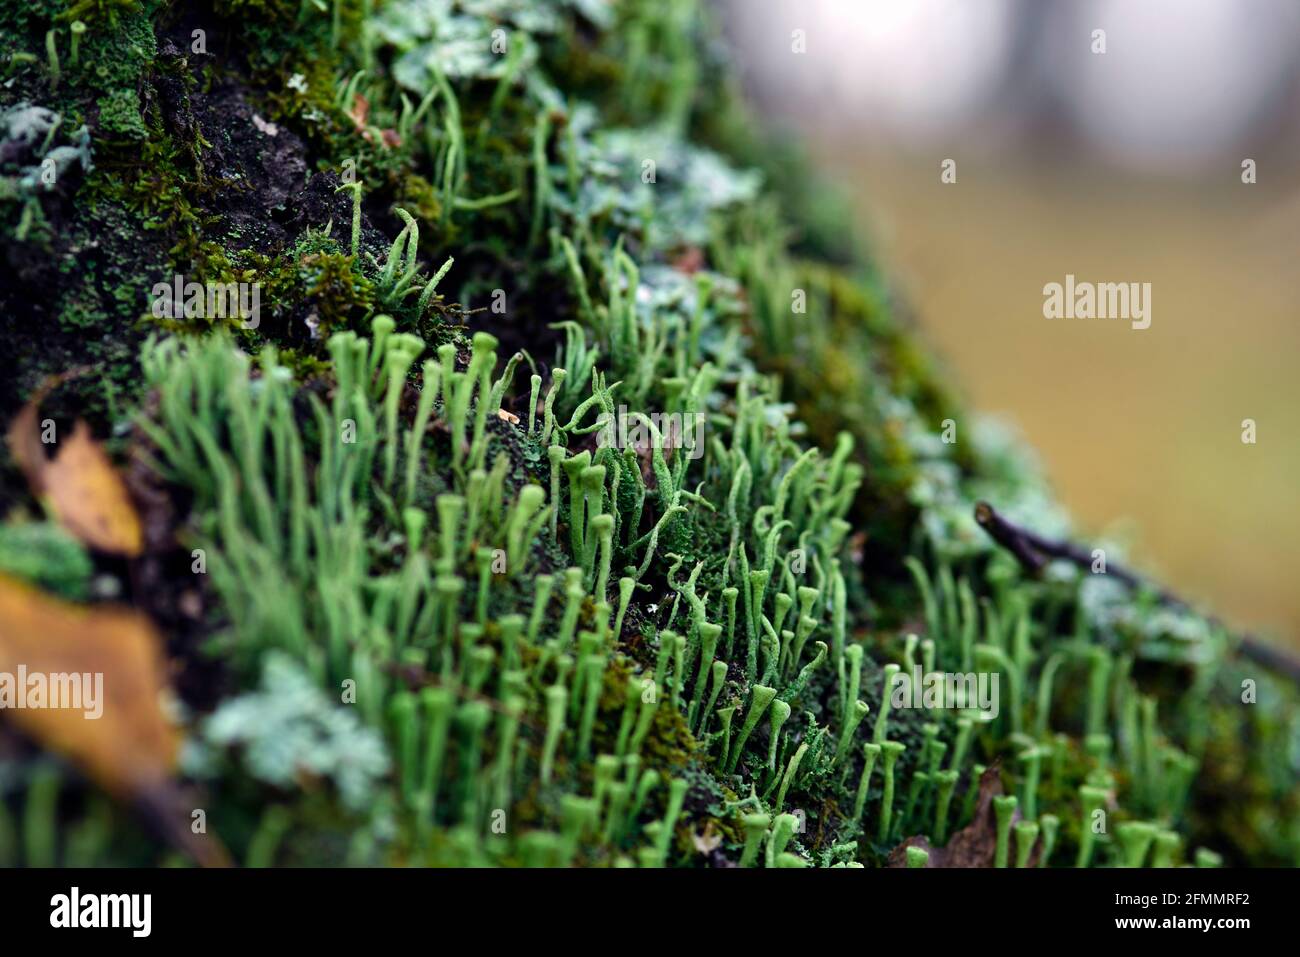 Lichen cladonia coniocraea and moss on tree bark in autumn forest Stock Photo